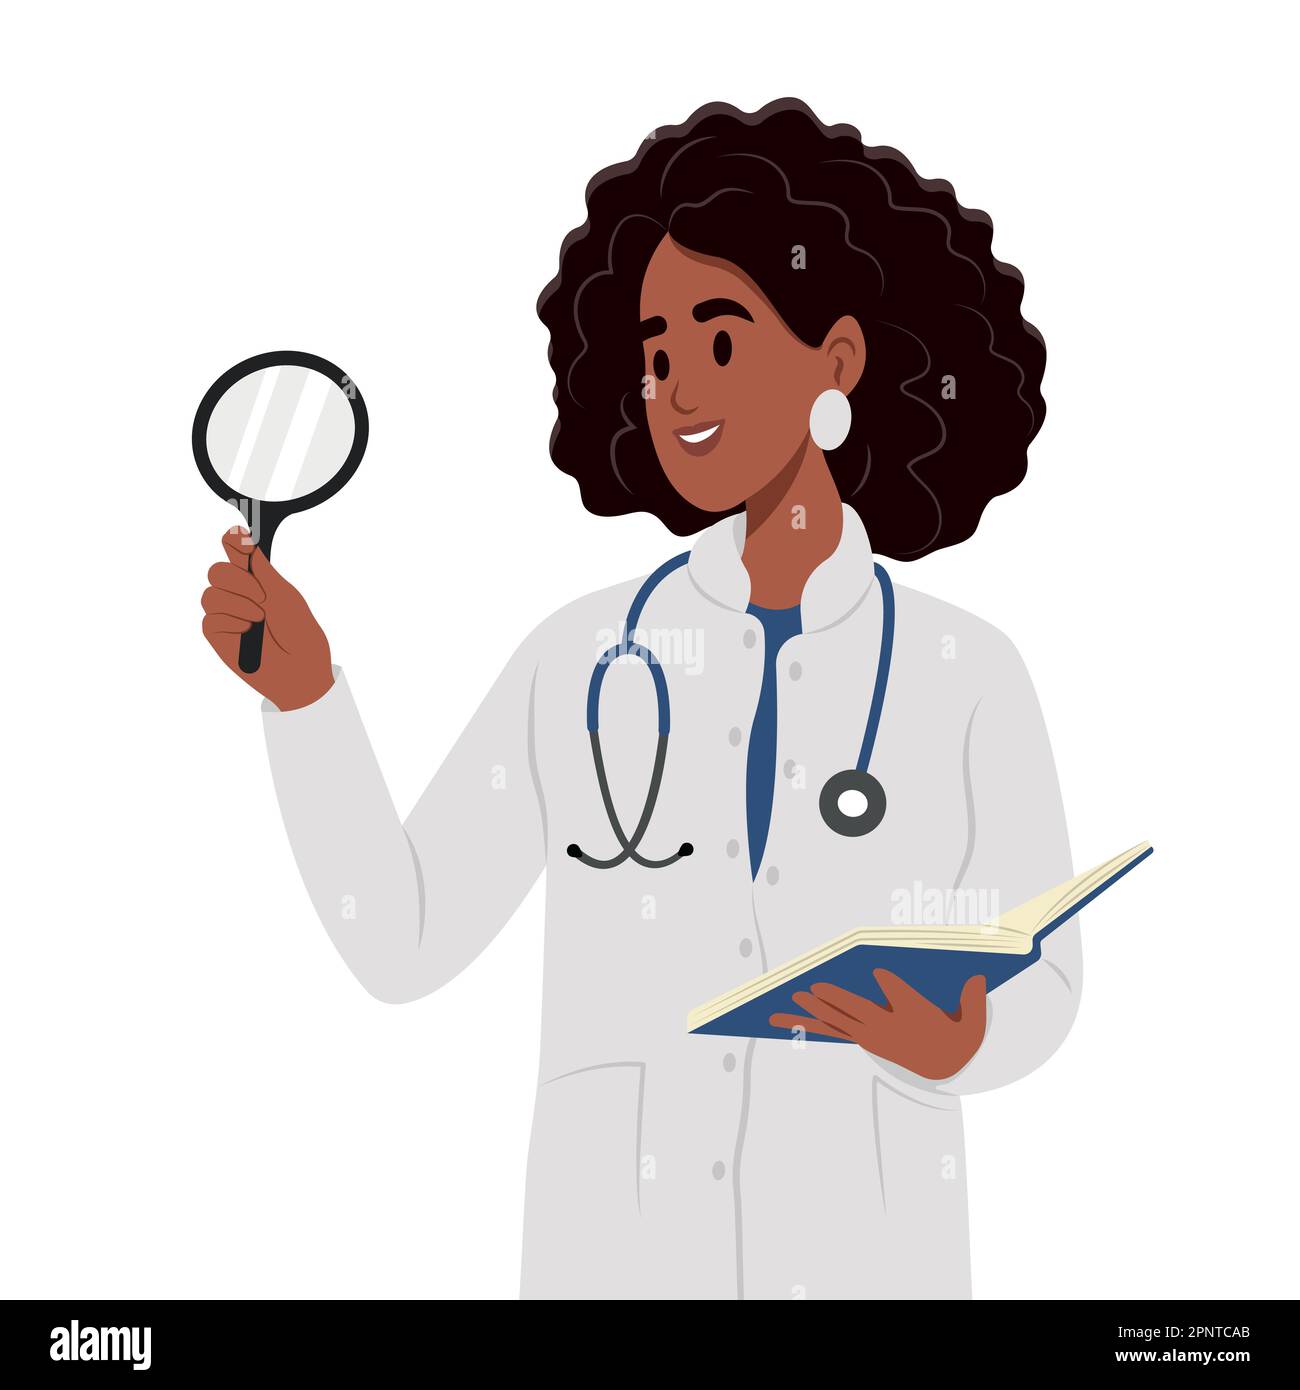 Neugier-Konzept. Lächelnde schwarze Frau mit einem Tablet und einem Stethoskop, die auf etwas mit einer Lupe blickt. Stock Vektor